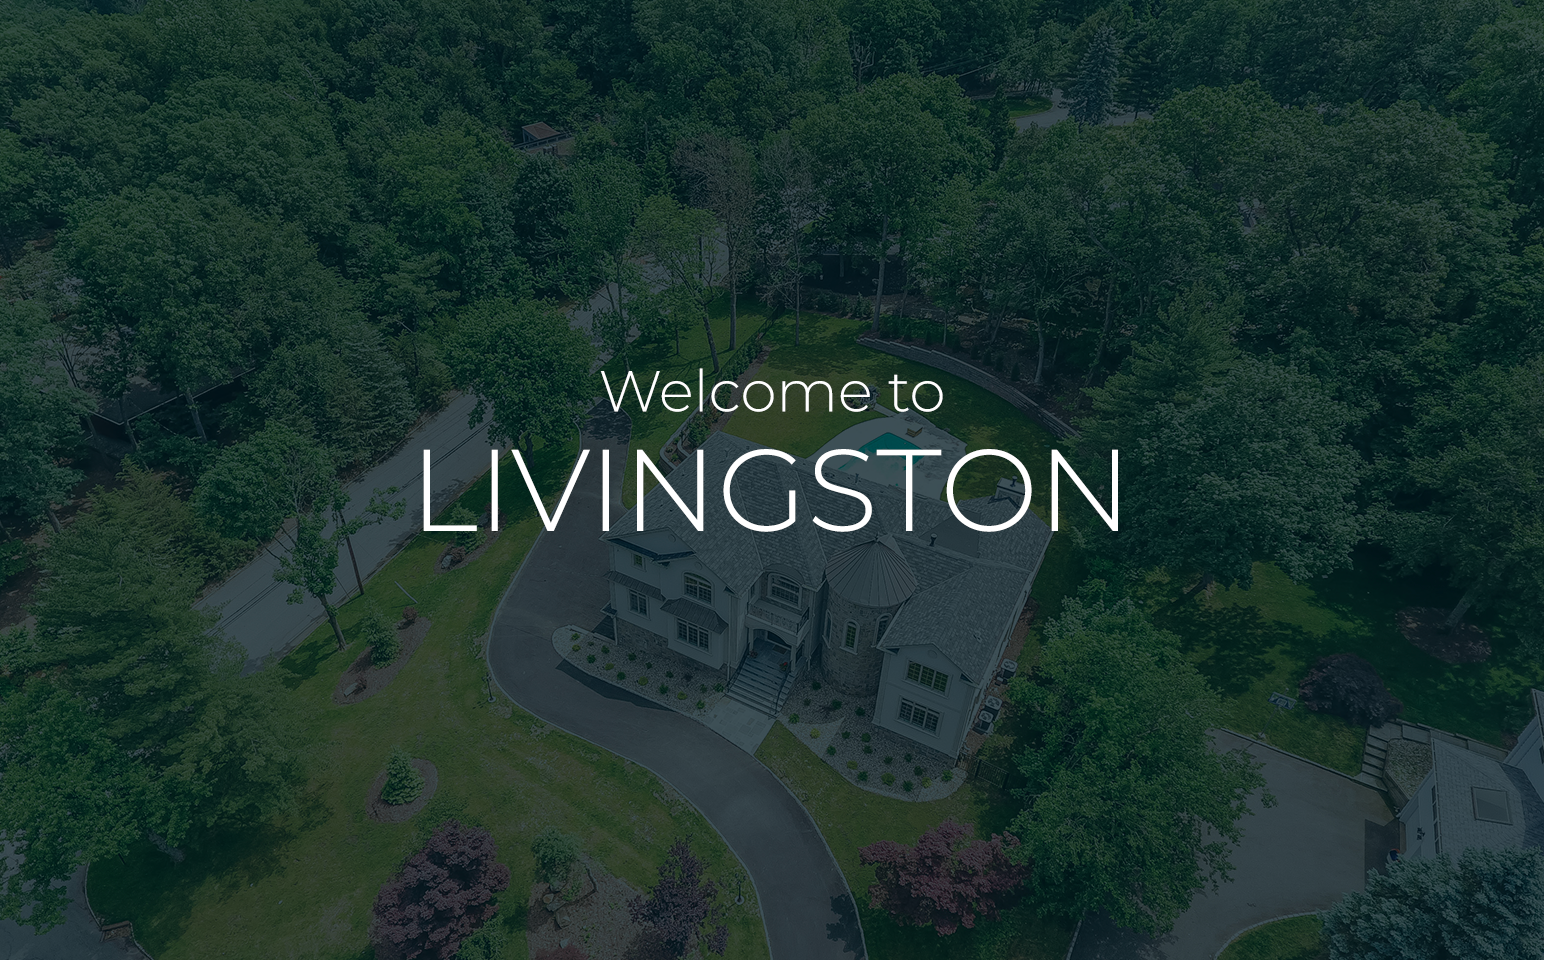 about Livington